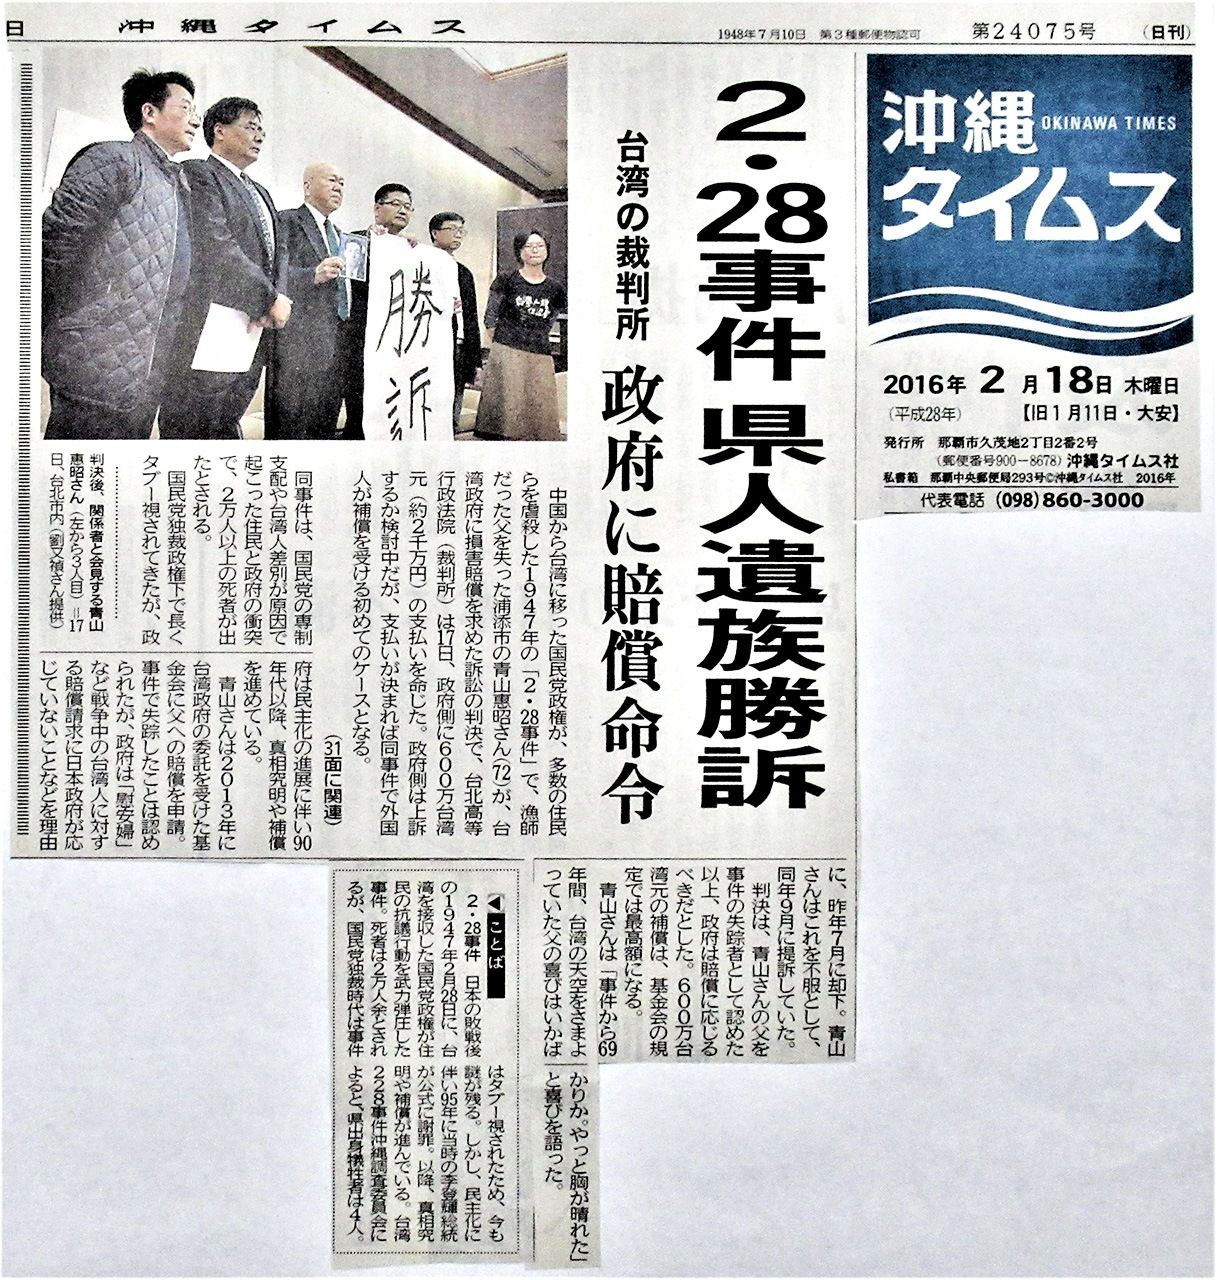 刊載當時勝訴判決的新聞報導（沖繩時報提供）